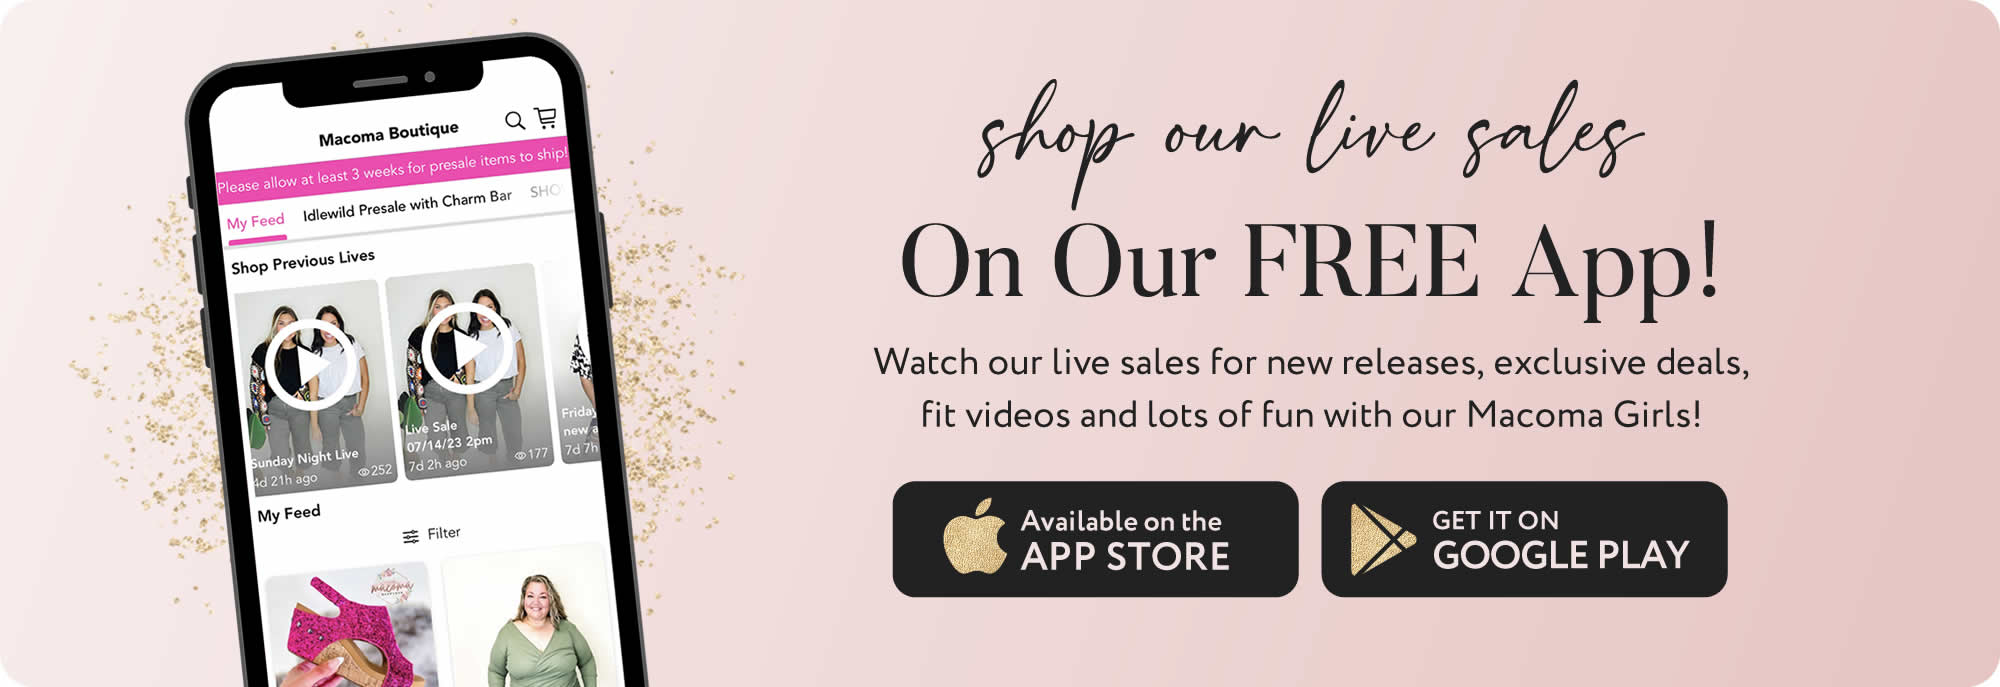 Shop live sales on our App!